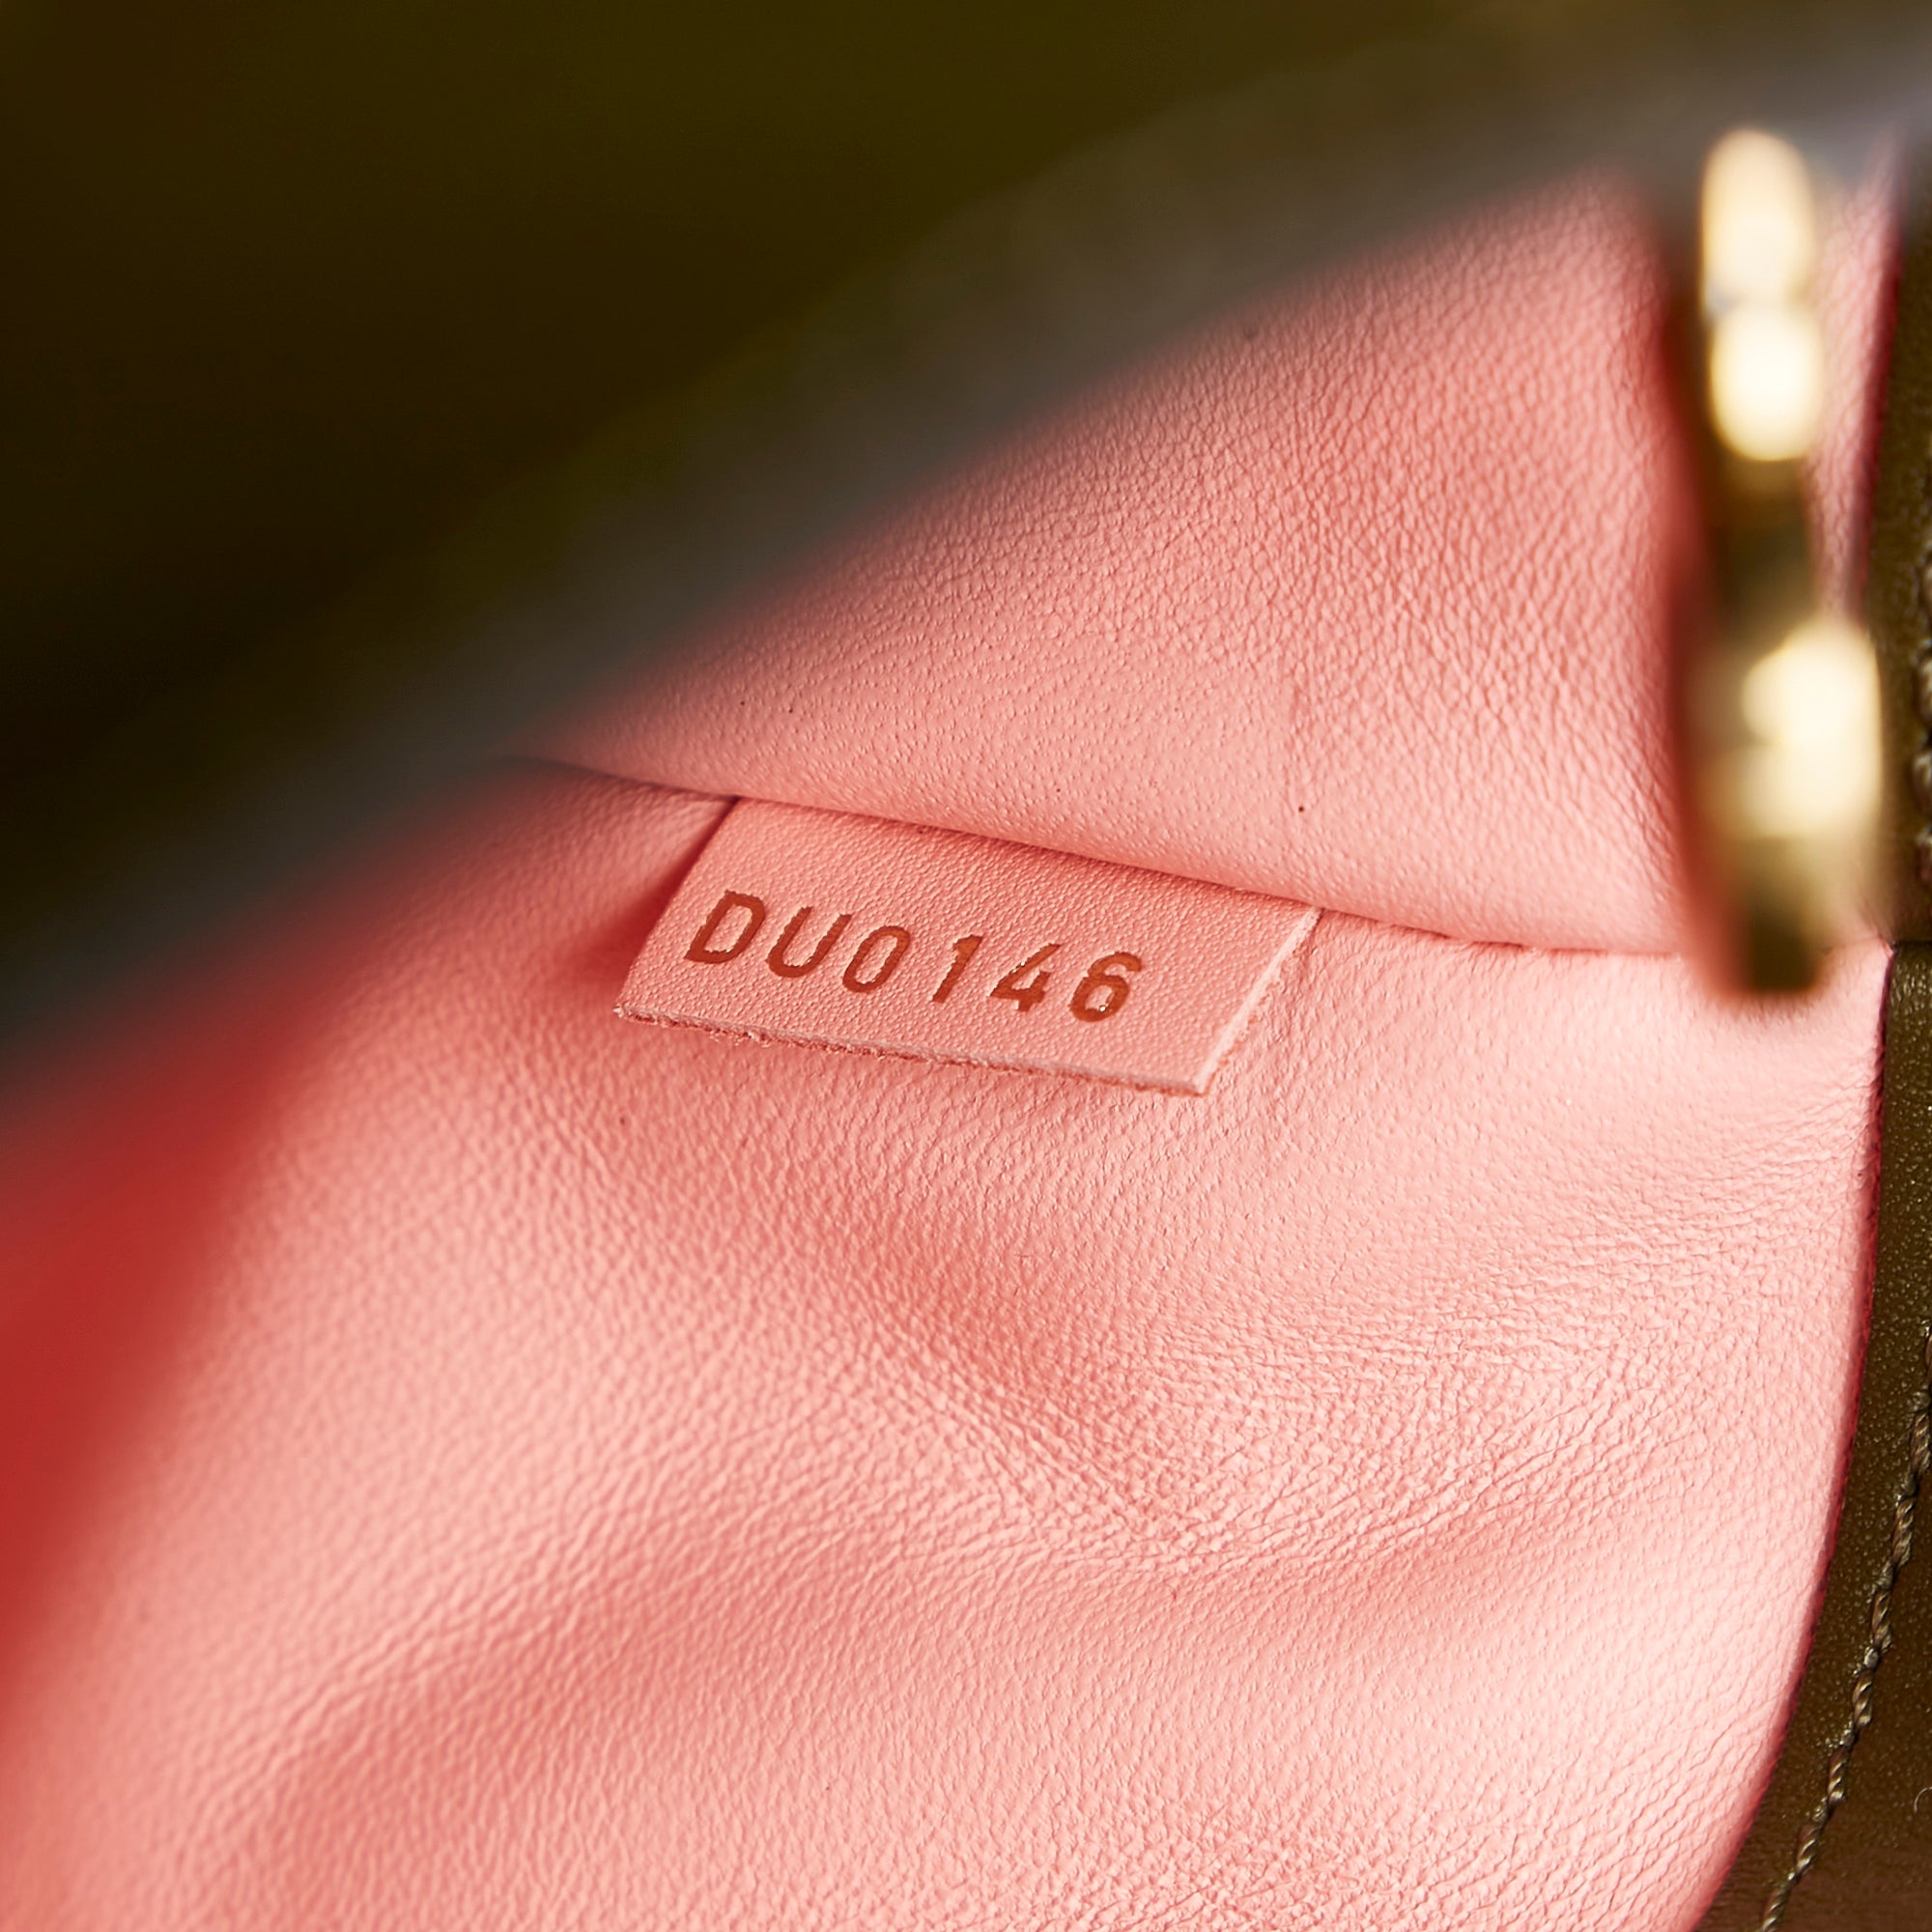 Shop Louis Vuitton Totes (M22997) by LESSISMORE☆